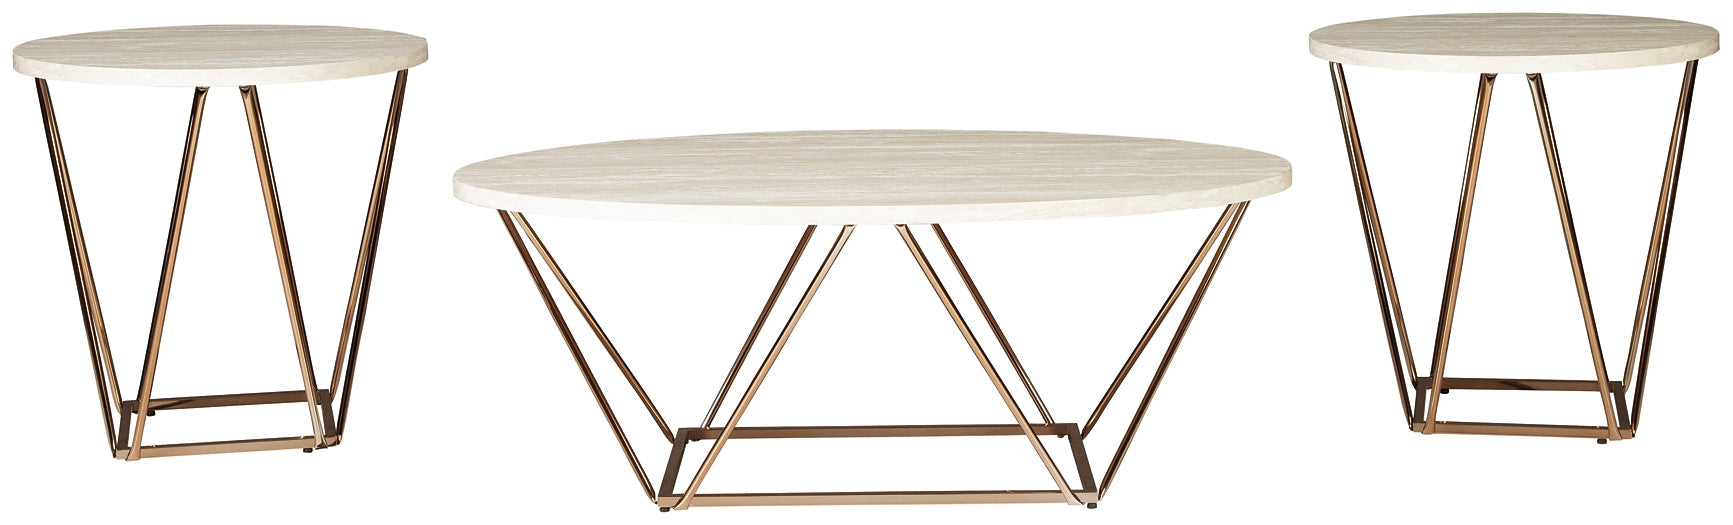 Tarica Occasional Table Set (3/CN) JR Furniture Storefurniture, home furniture, home decor